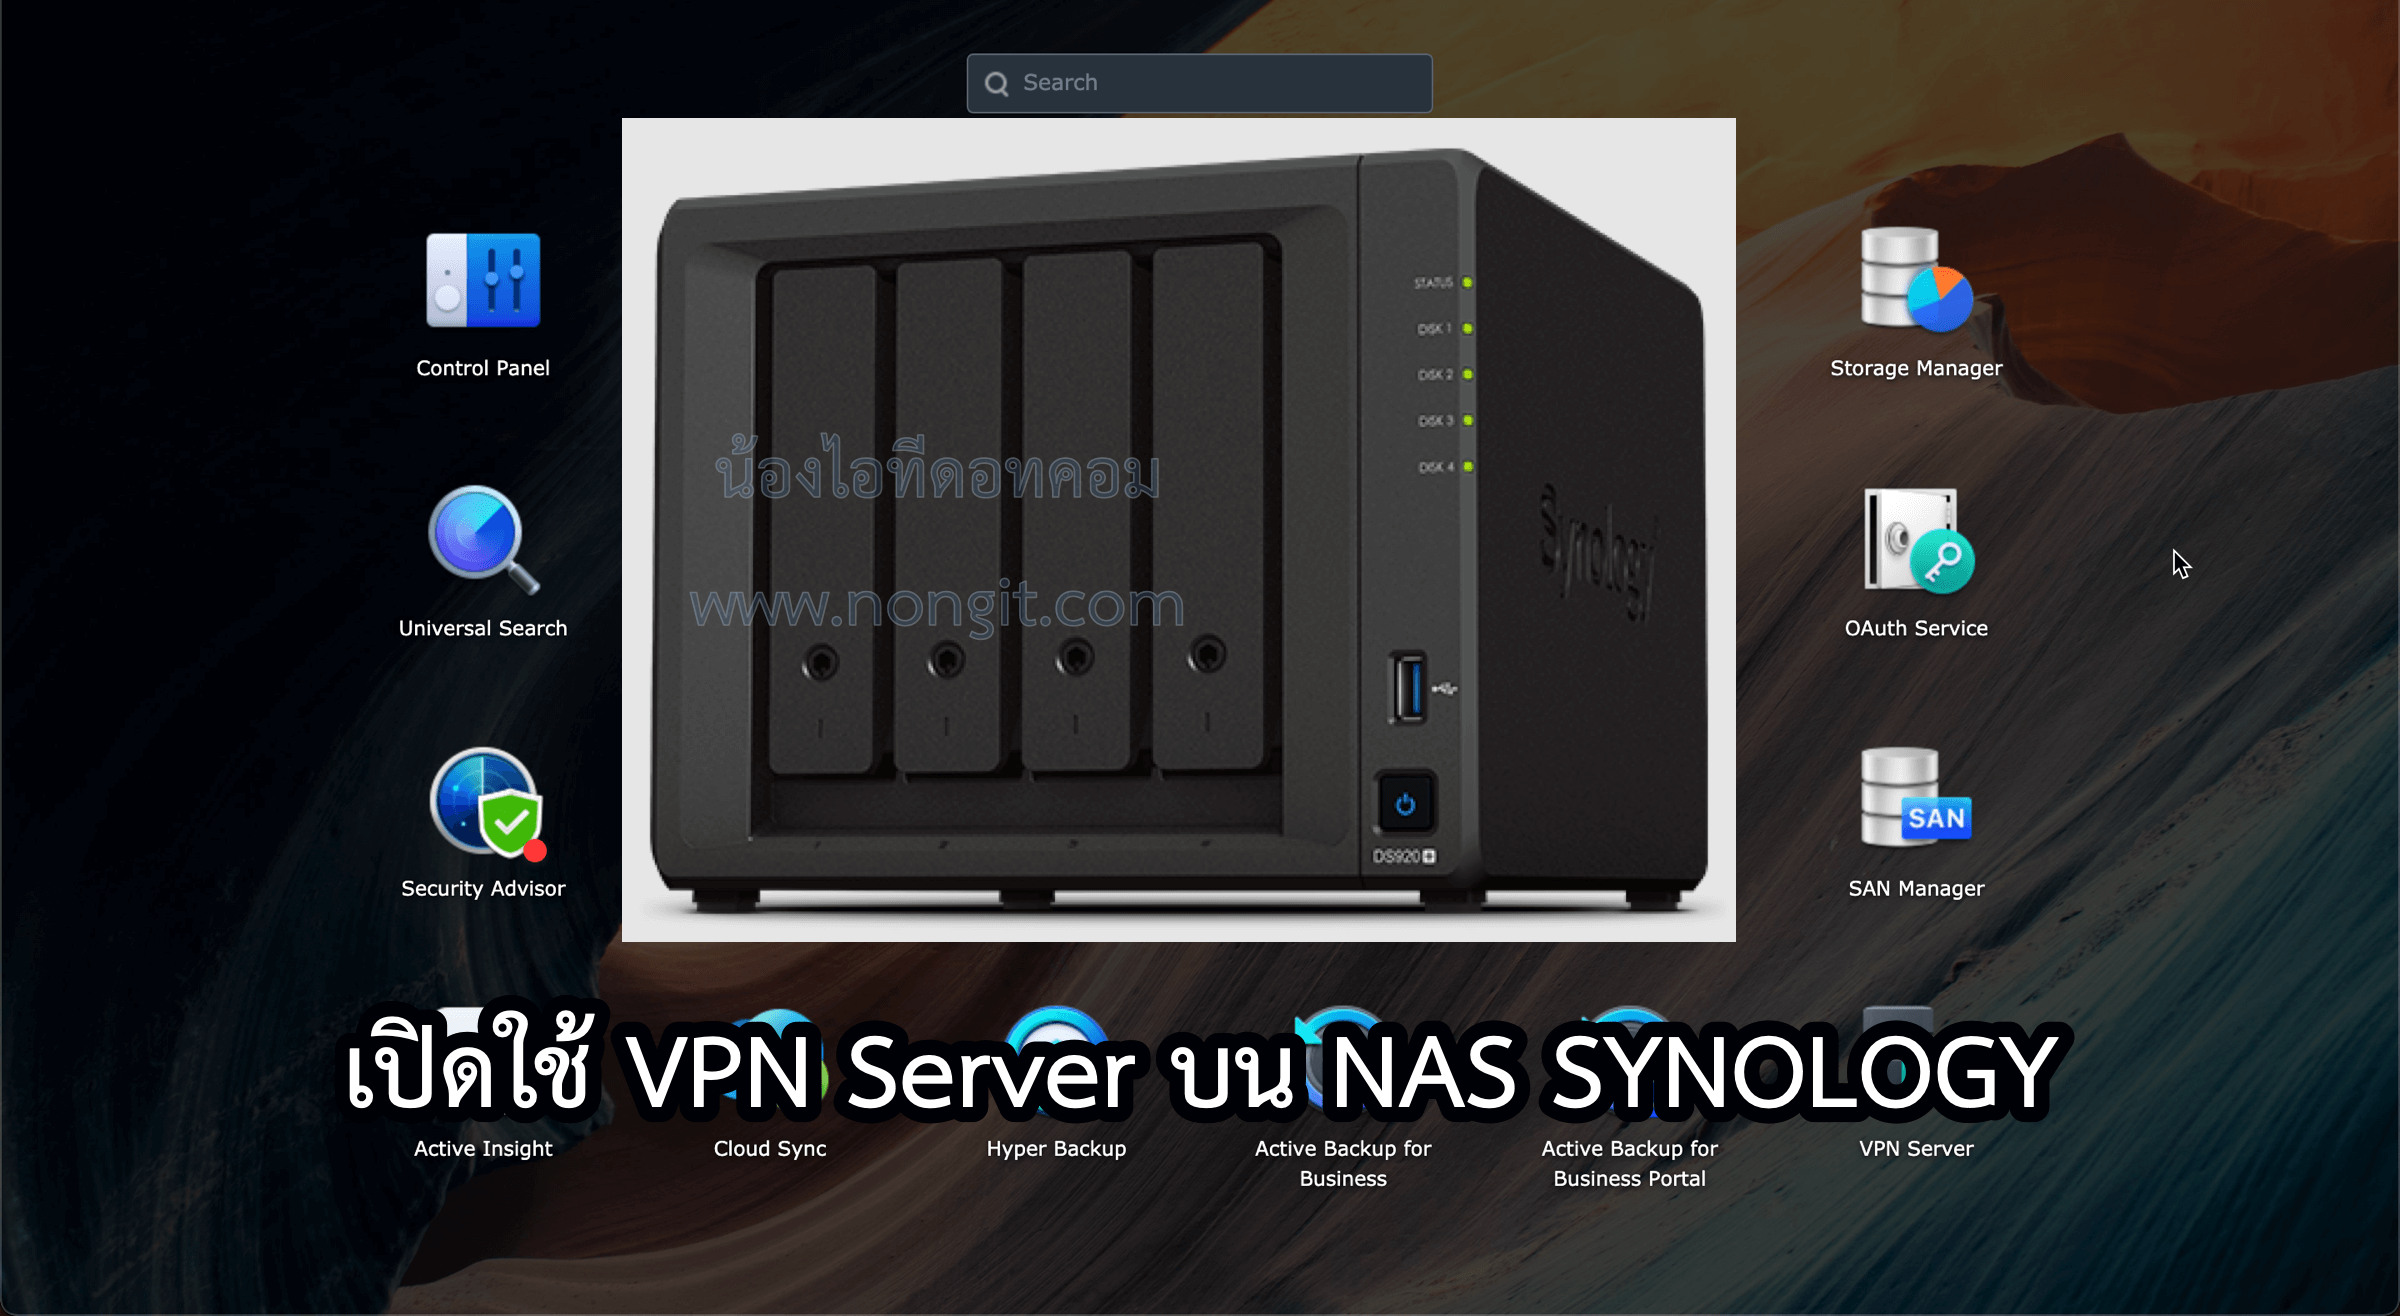 ตั้งค่า VPN Server ในเครื่อง NAS SYNOLOGY